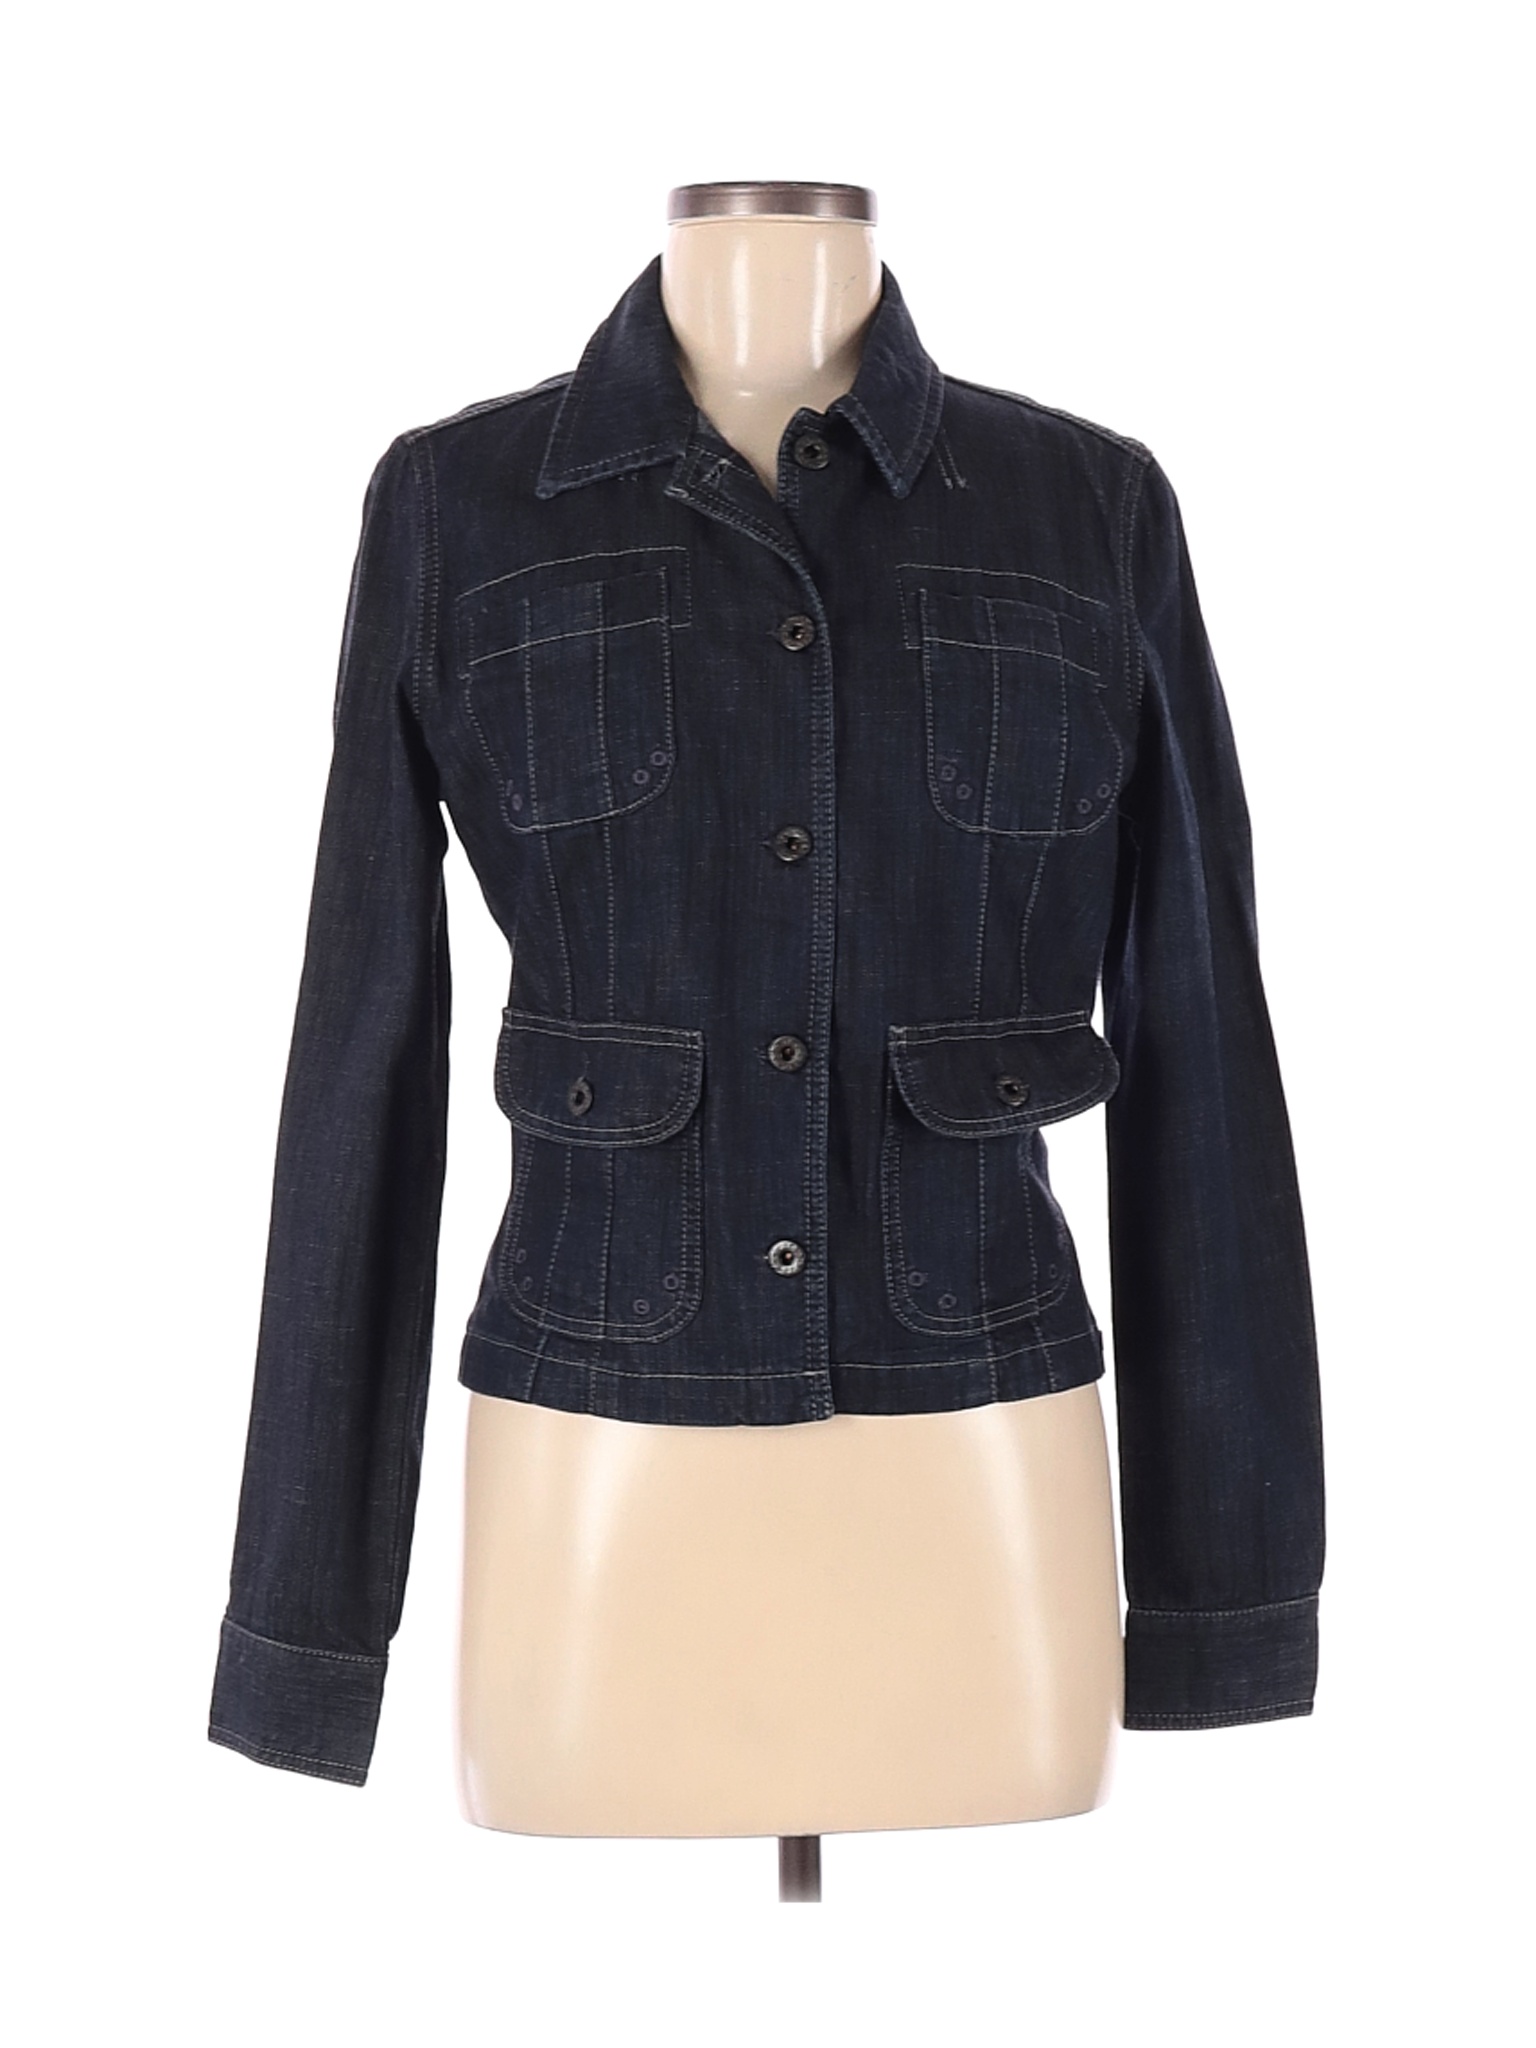 Polo Jeans Co. by Ralph Lauren Women Black Denim Jacket M | eBay